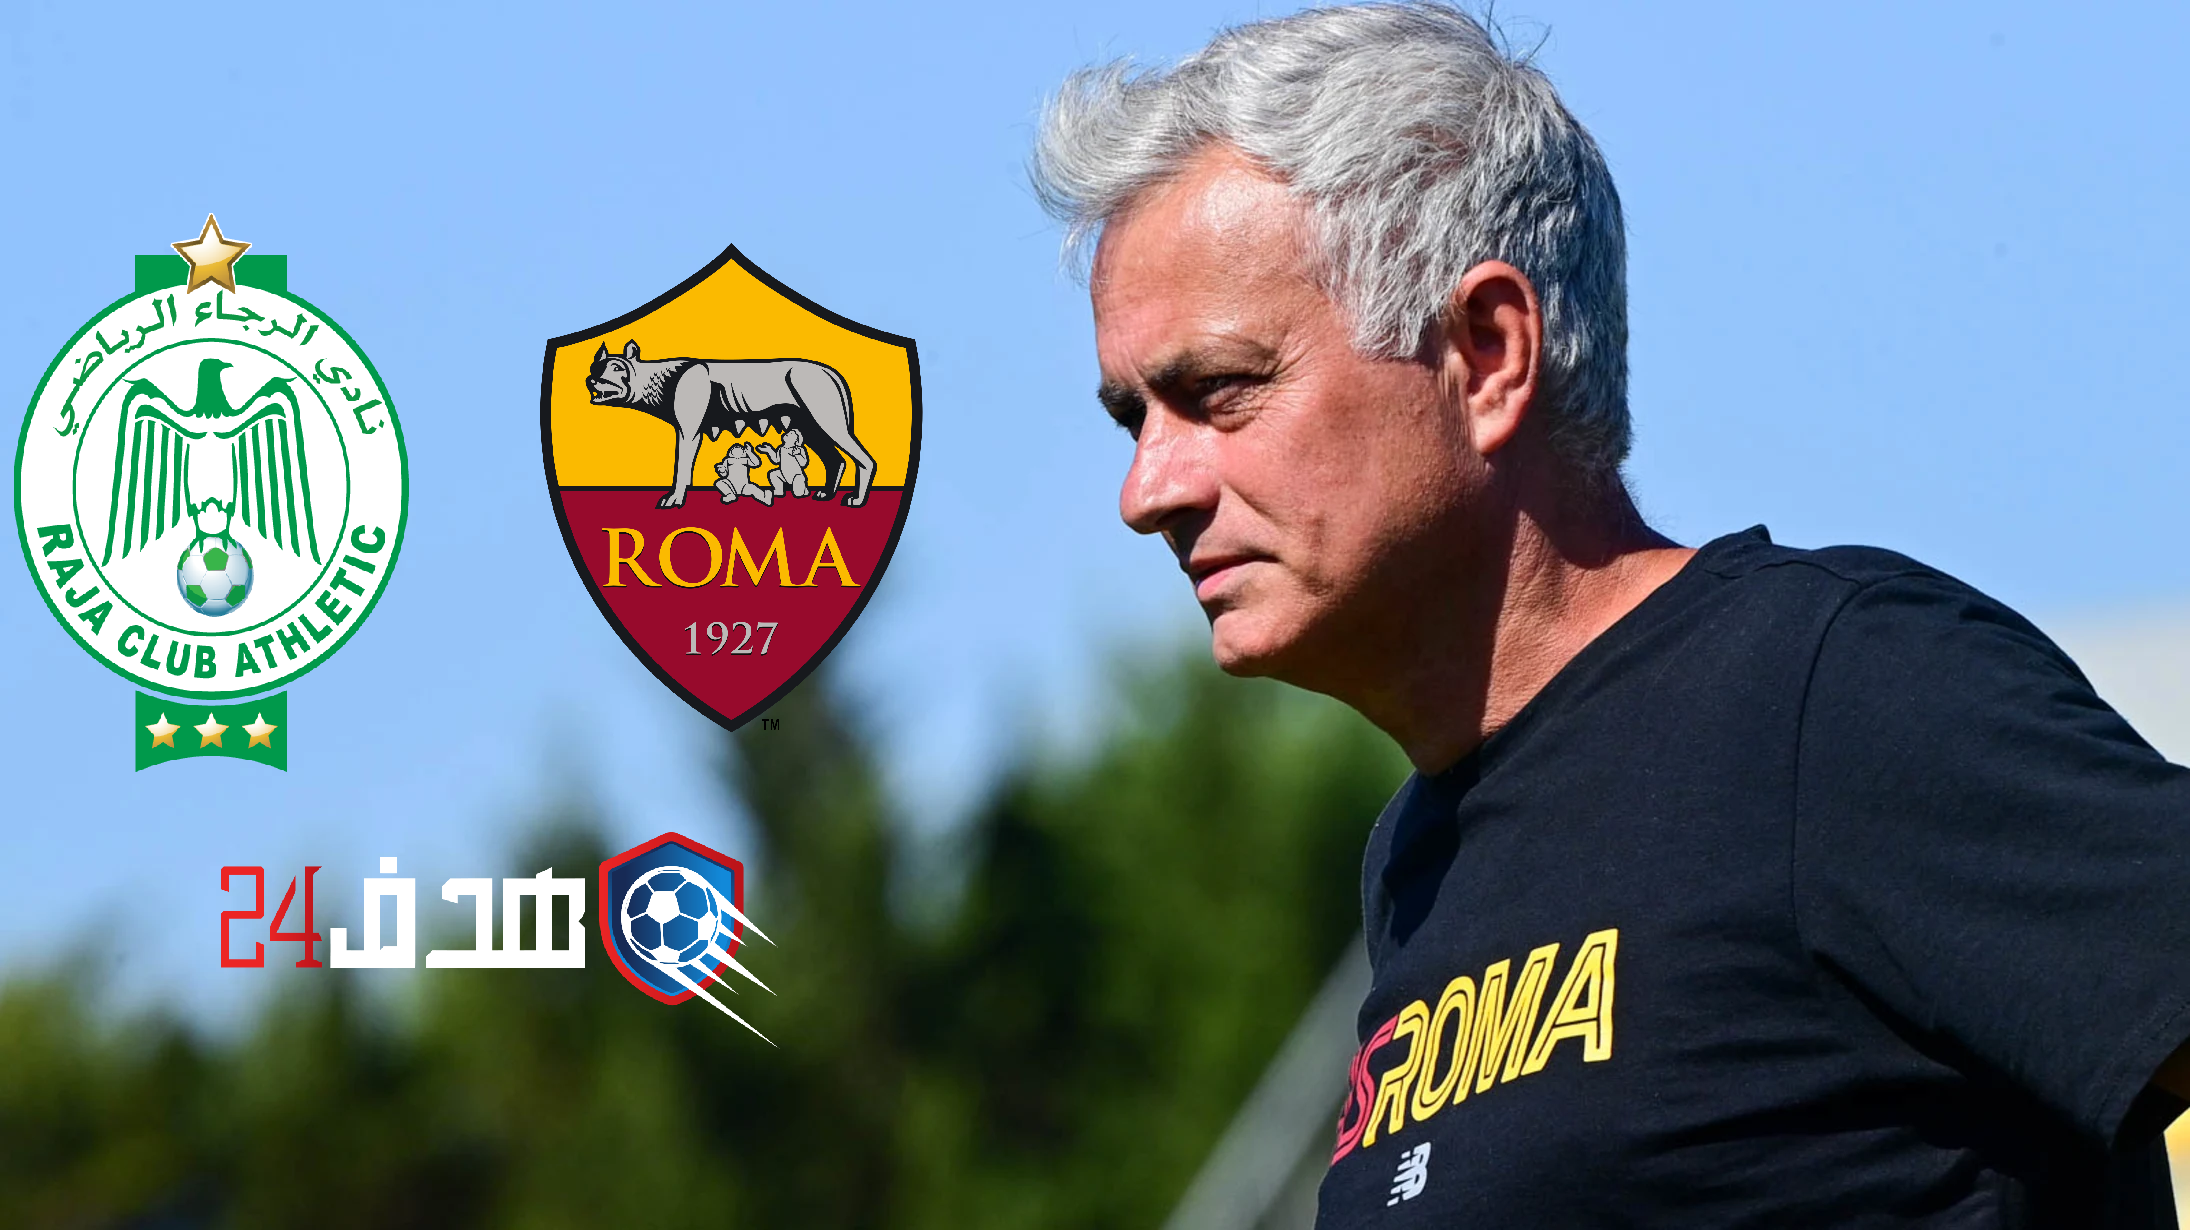 مباراة الرجاء وروما الإيطالي, الرجاء الرياضي وروما الإيطالي, Raja-As Rome, As Rome-Raja